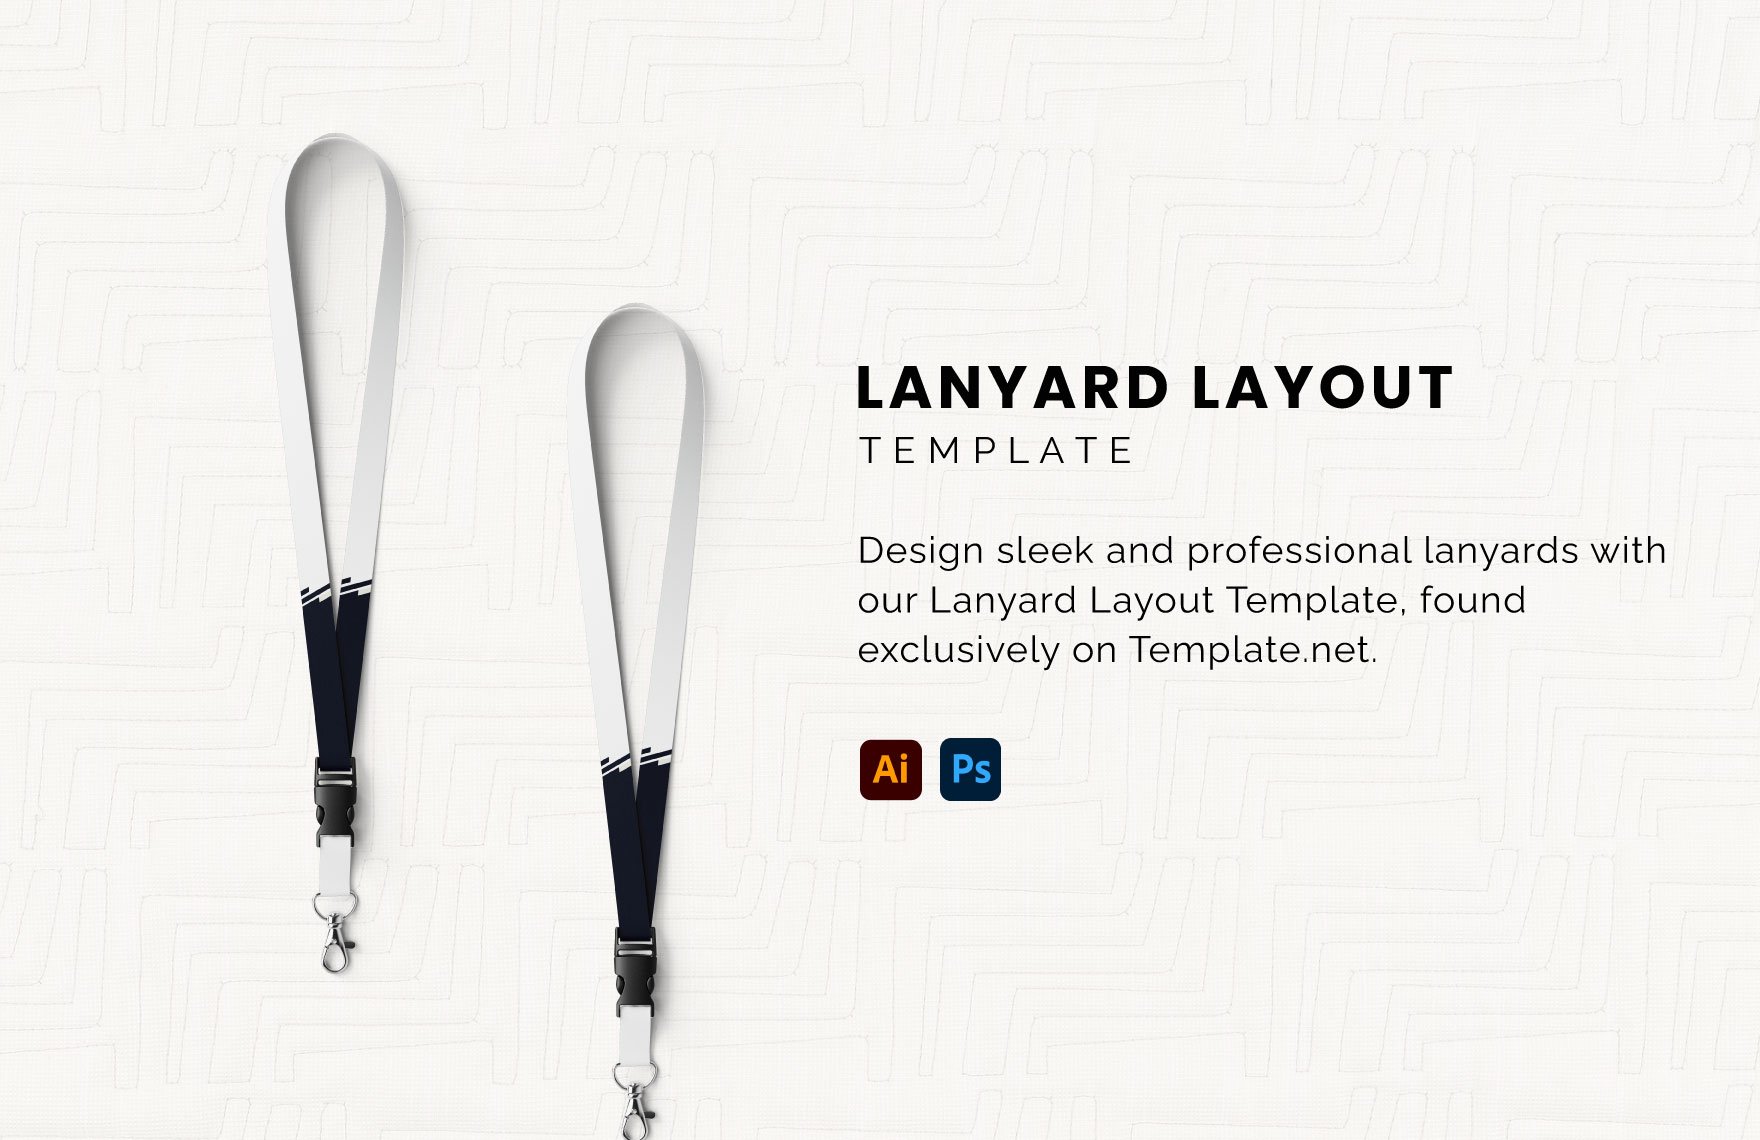 Free Lanyard Layout in Illustrator, PSD